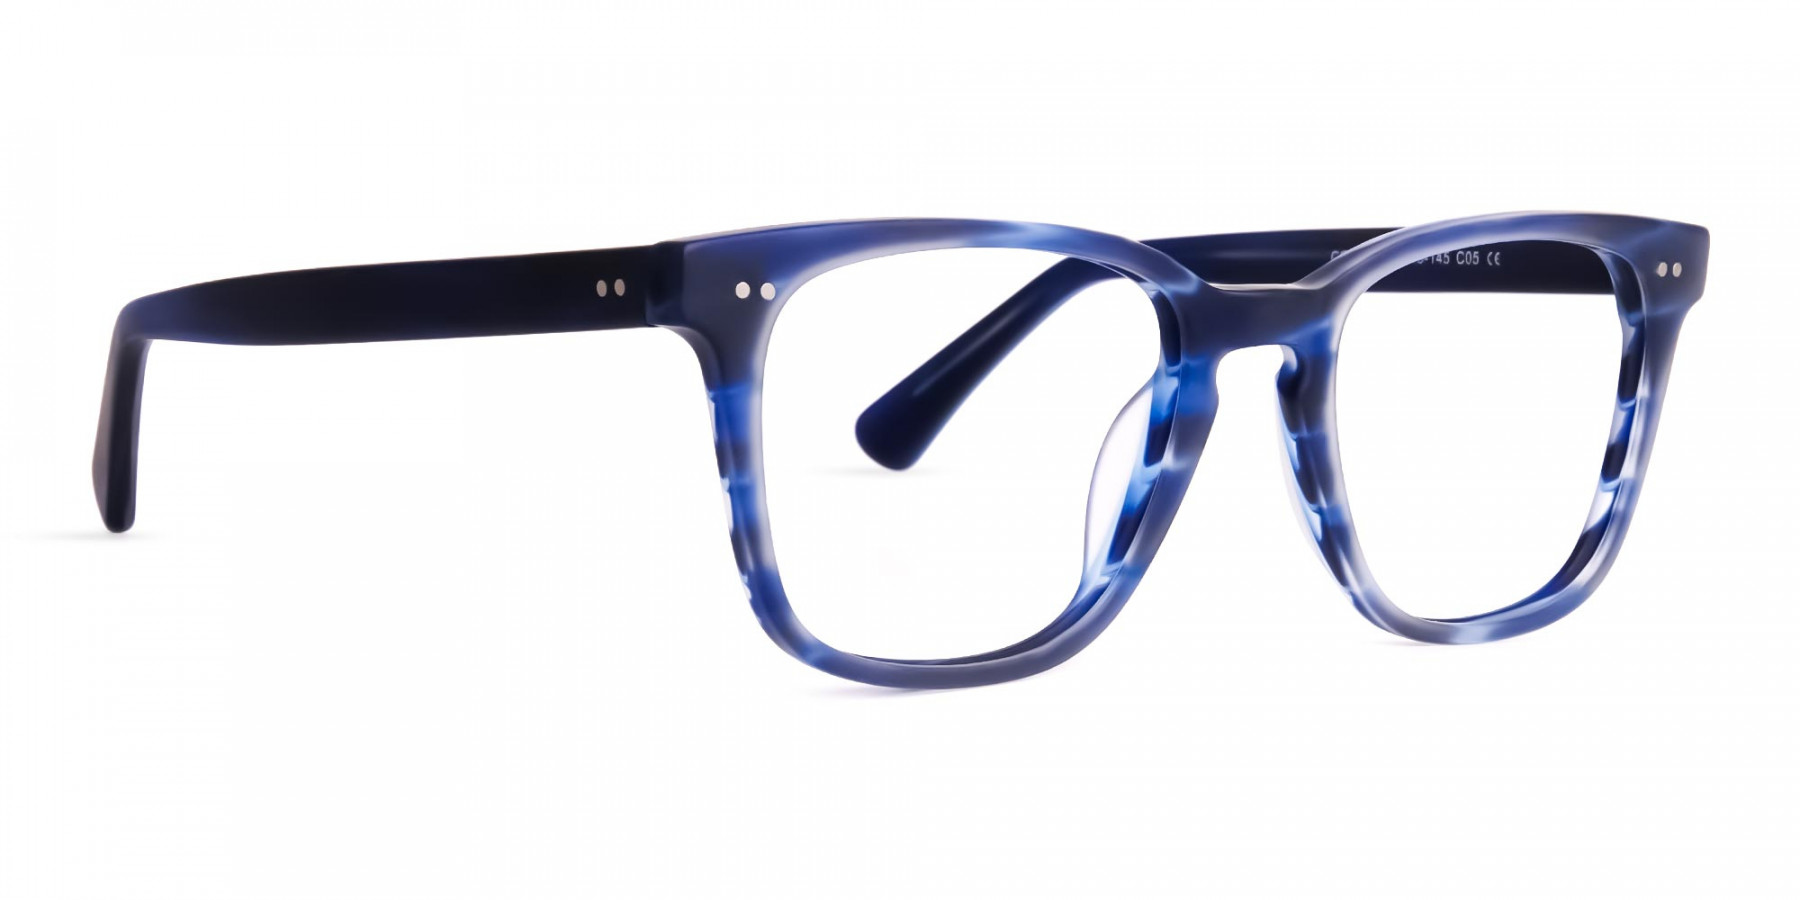 ocean-blue-wayfarer-full-rim-glasses-frames-1